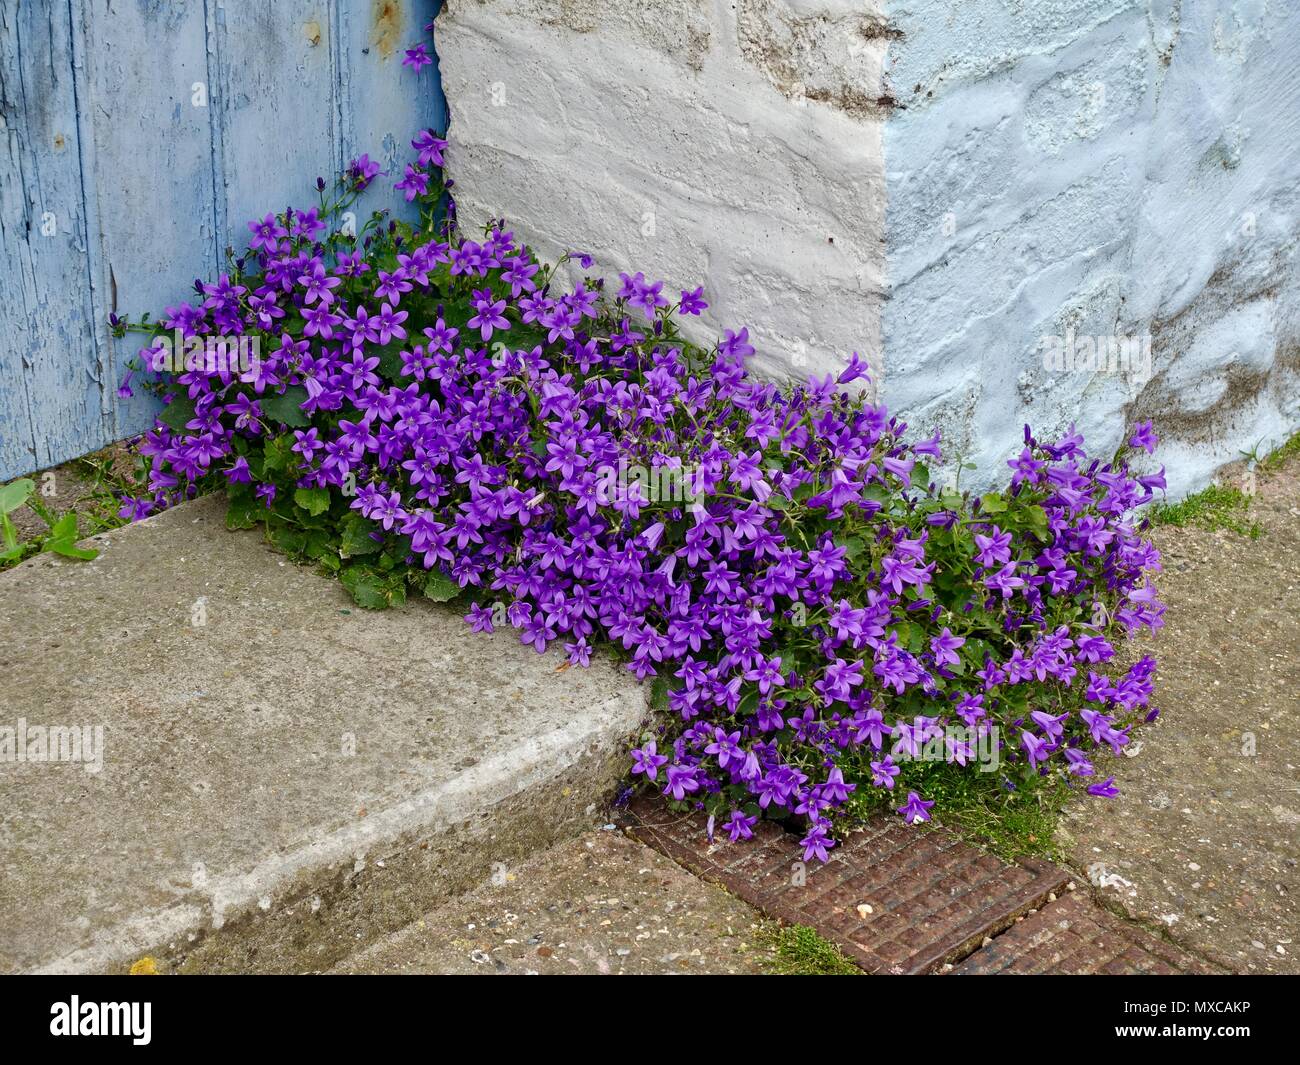 Lila blühende Pflanze, Campanula portenschlagiana, allgemein bekannt als Glockenblumen, wachsen in der Ecke eine alte Tür in Nordfrankreich. Stockfoto